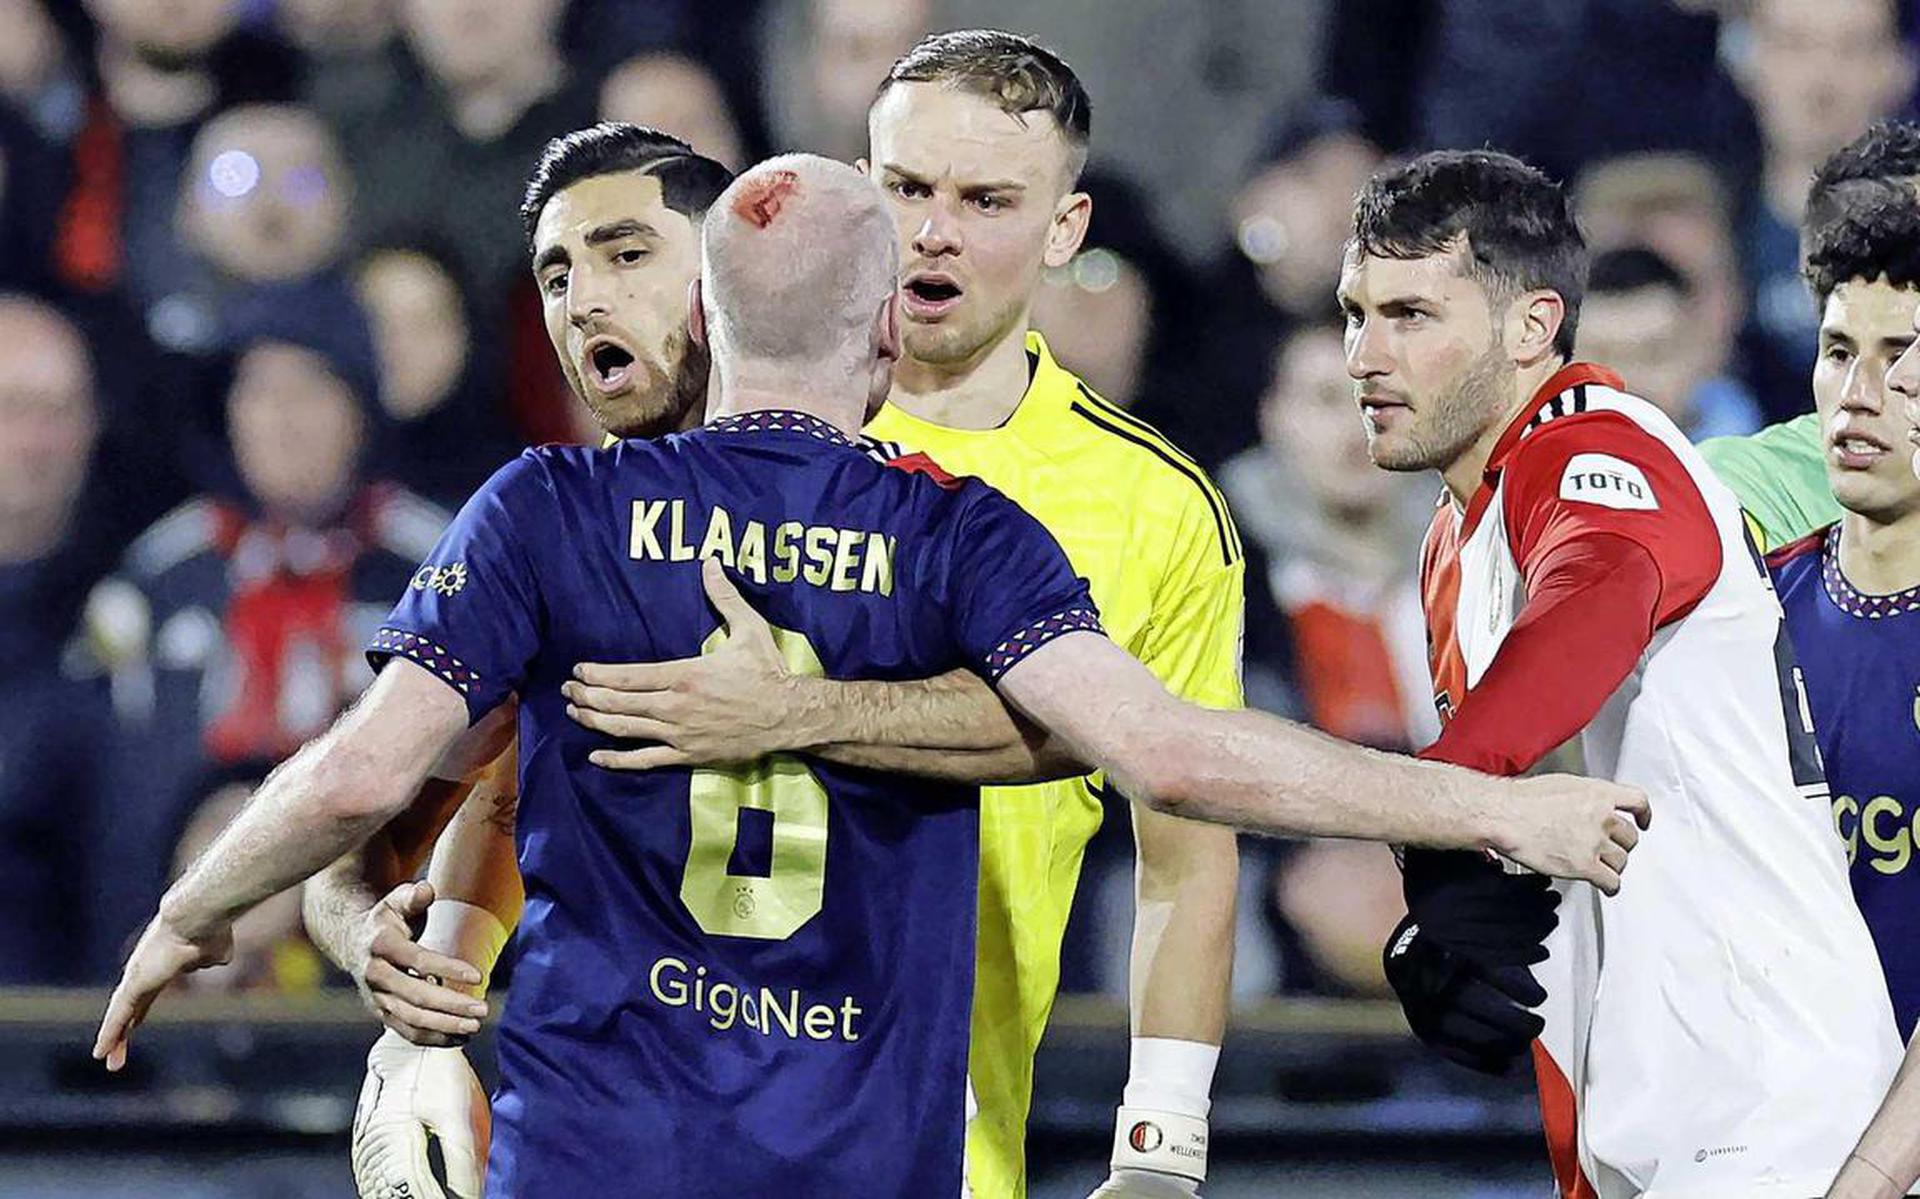 Het hoofd van Davy Klaassen bloedt. De Ajax-middenvelder werd in De Kuip geraakt door een aansteker die door een Feyenoord-’fan’ vanaf de tribune naar hem werd gegooid.